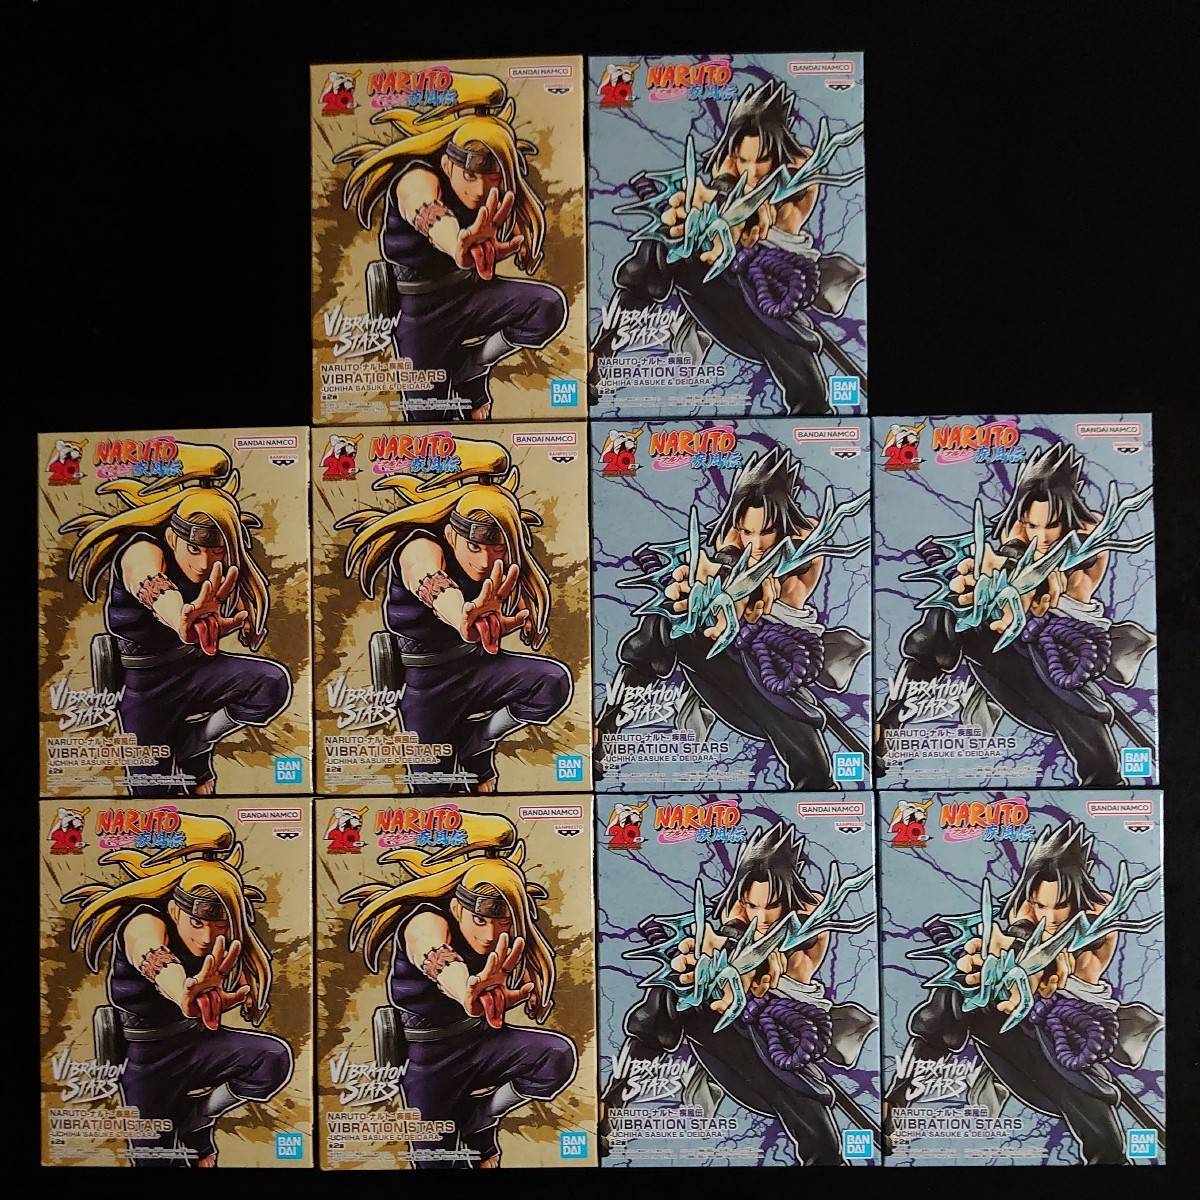 NARUTO ナルト 疾風伝 VIBRATION STARS うちはサスケ デイダラ 全２種 10個セット 単行本 巻ノ四十 表紙 40巻